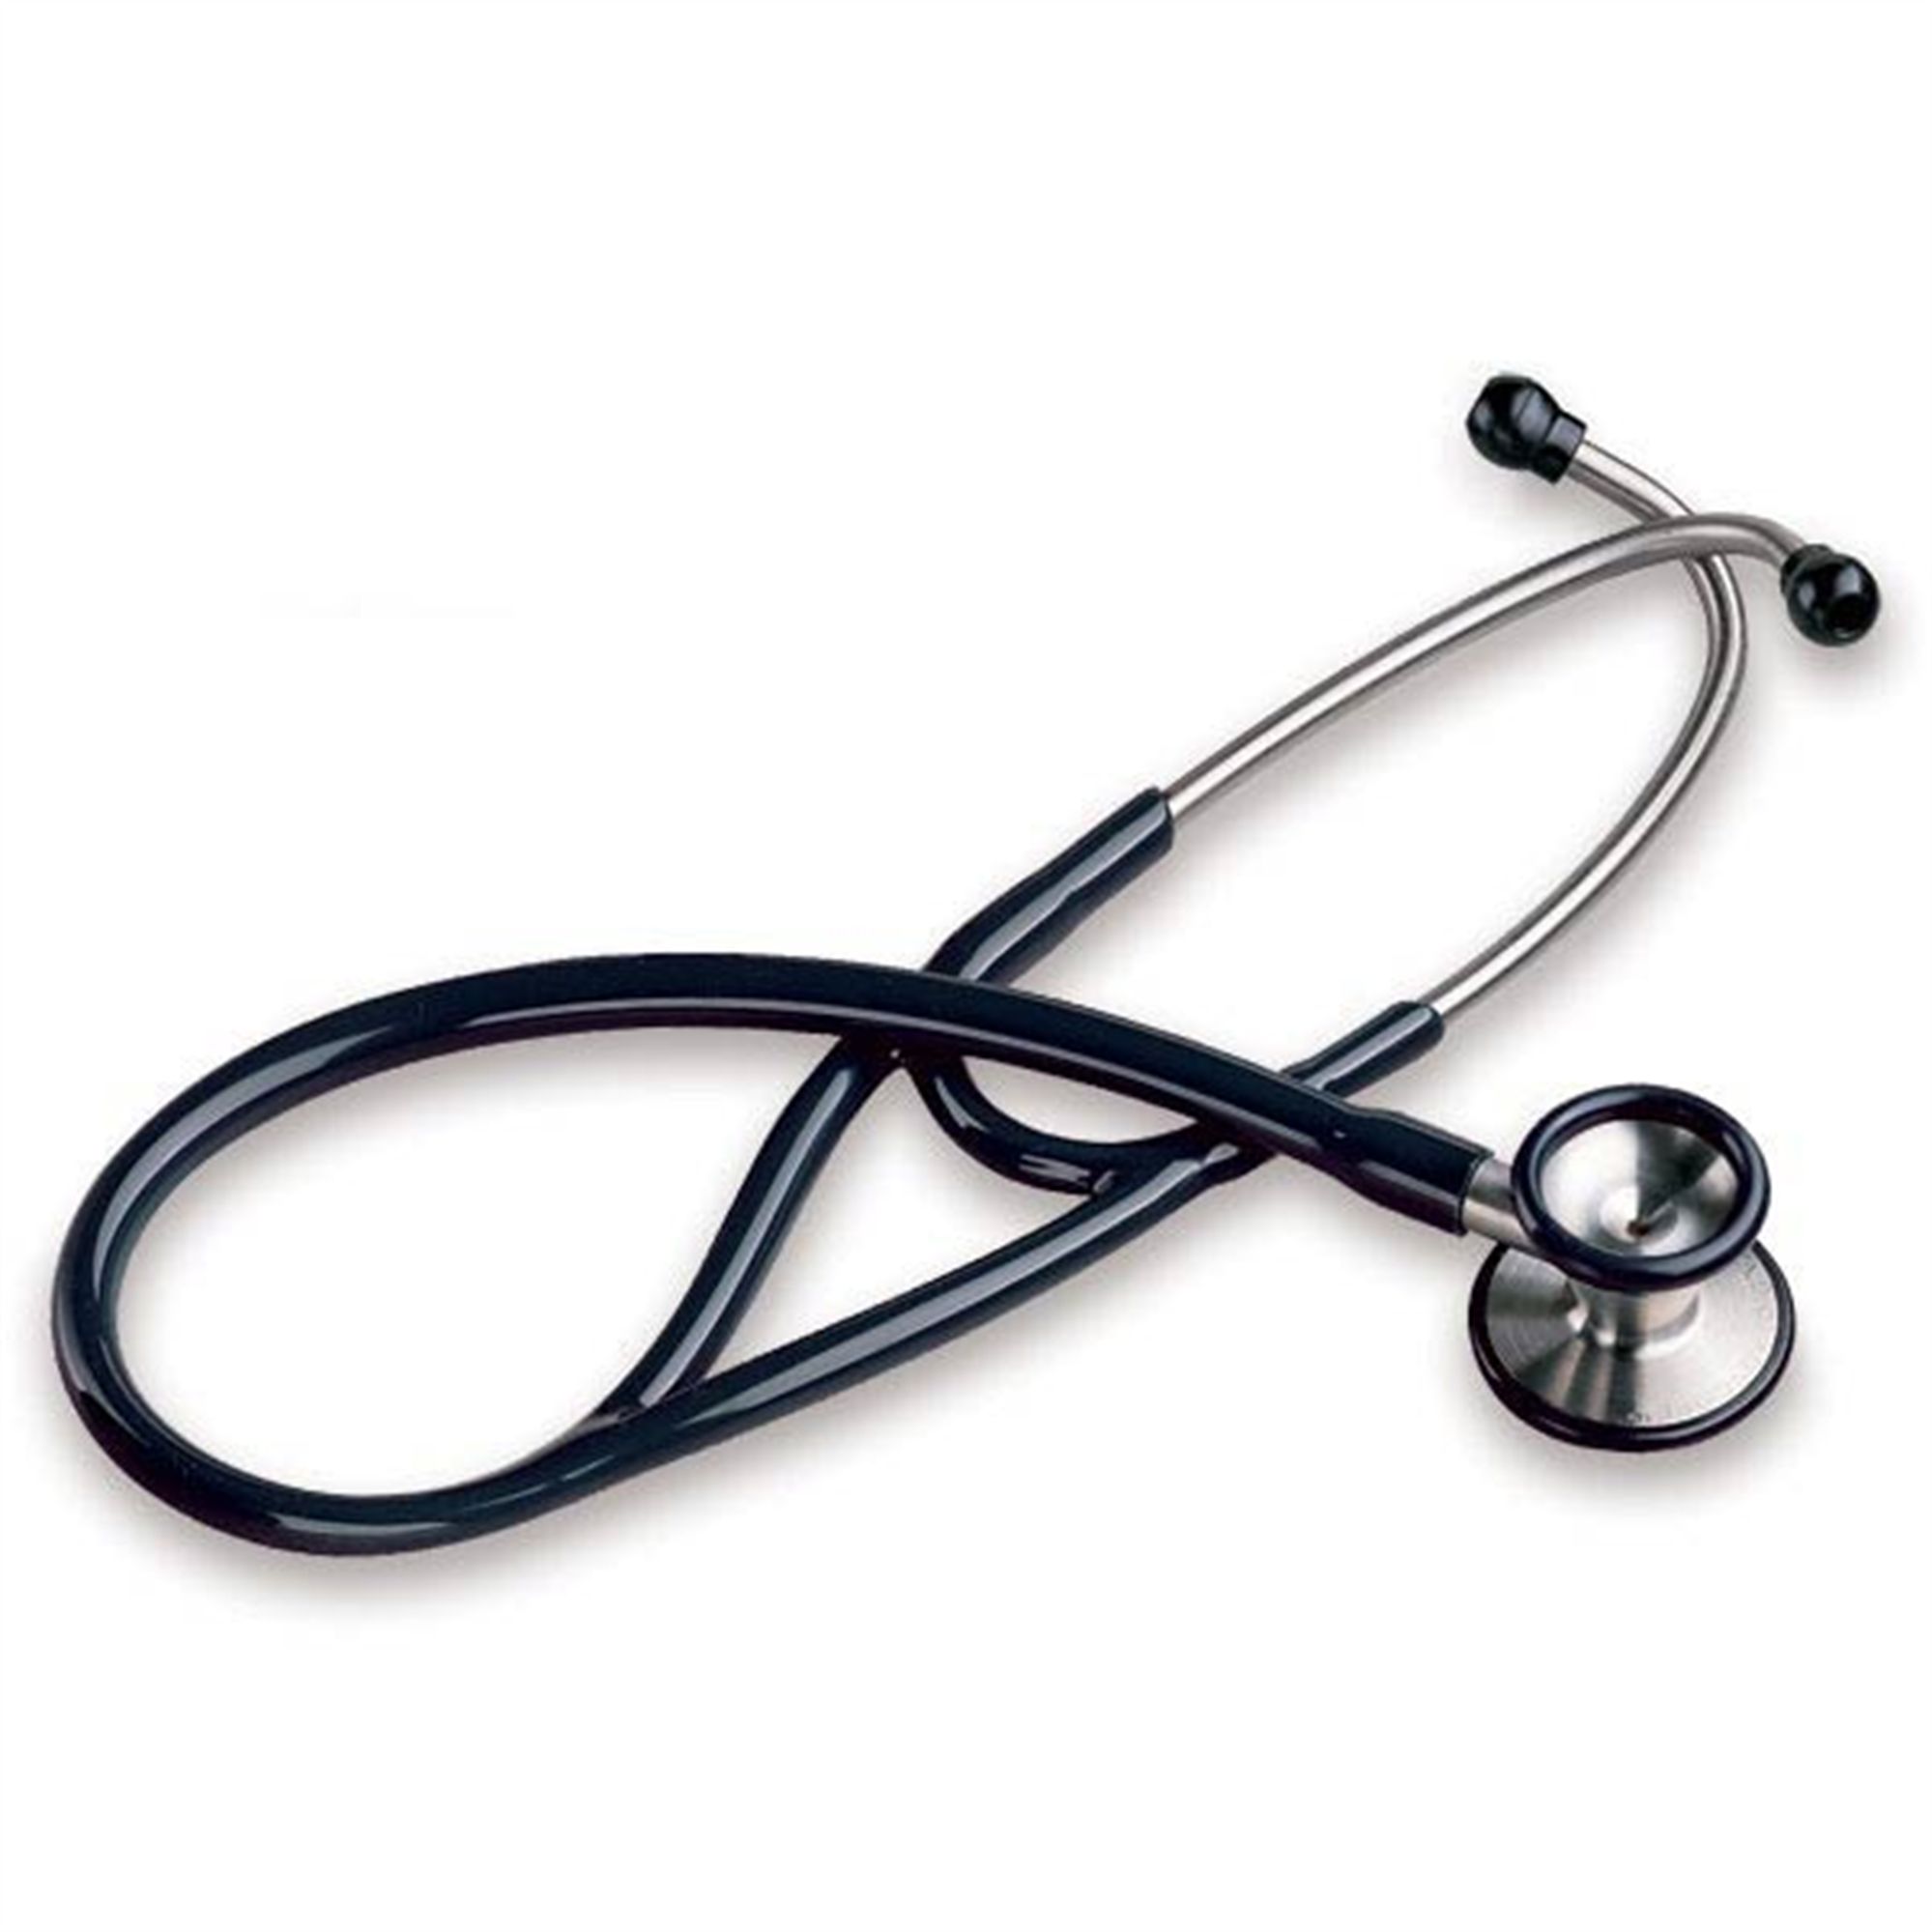 Cardiology Stethoscope - MarketLab, Inc.